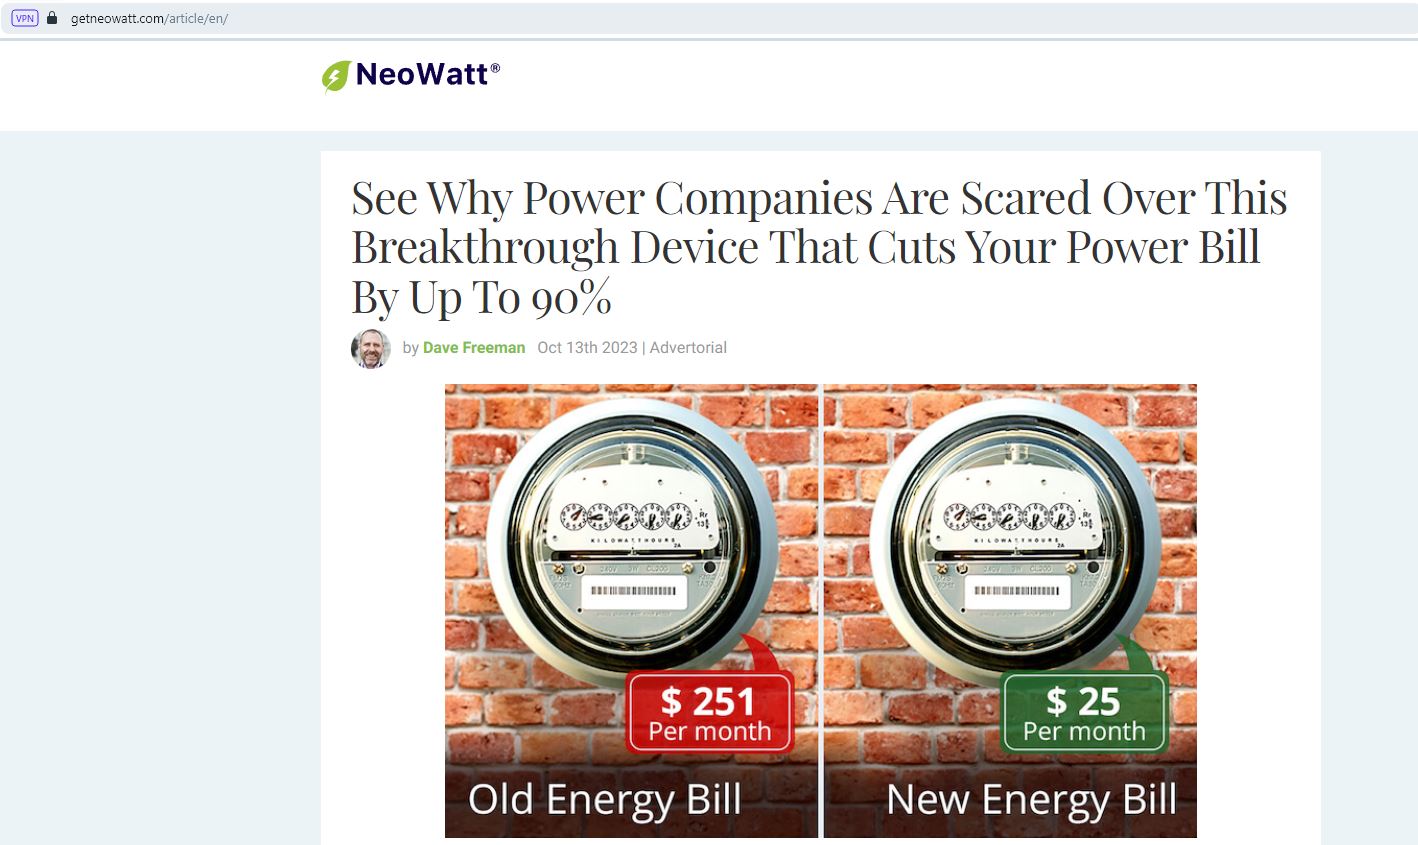 NeoWatt is a scam – SoftwareFair